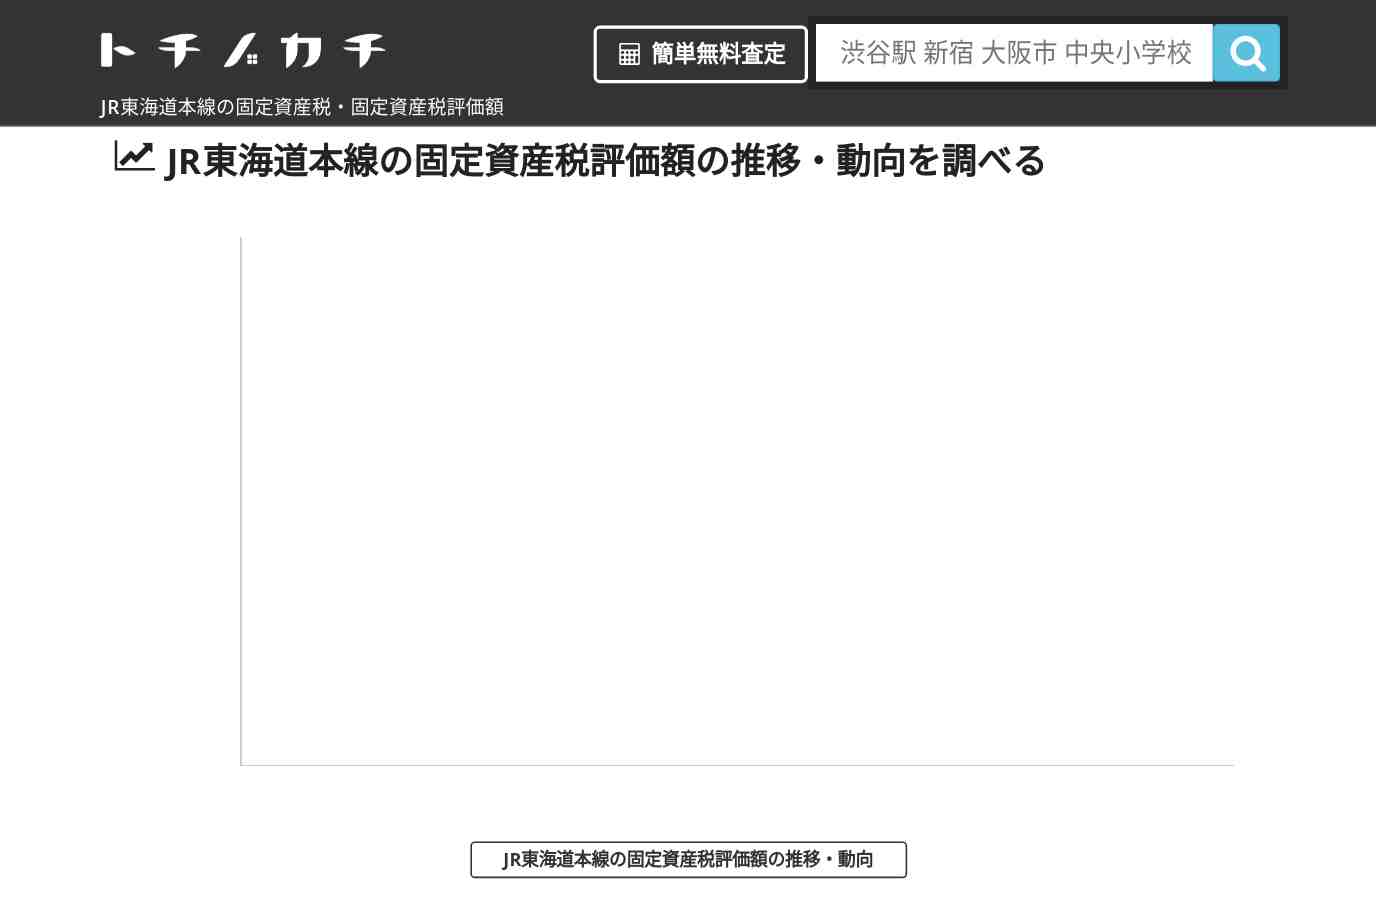 JR東海道本線(JR)の固定資産税・固定資産税評価額 | トチノカチ